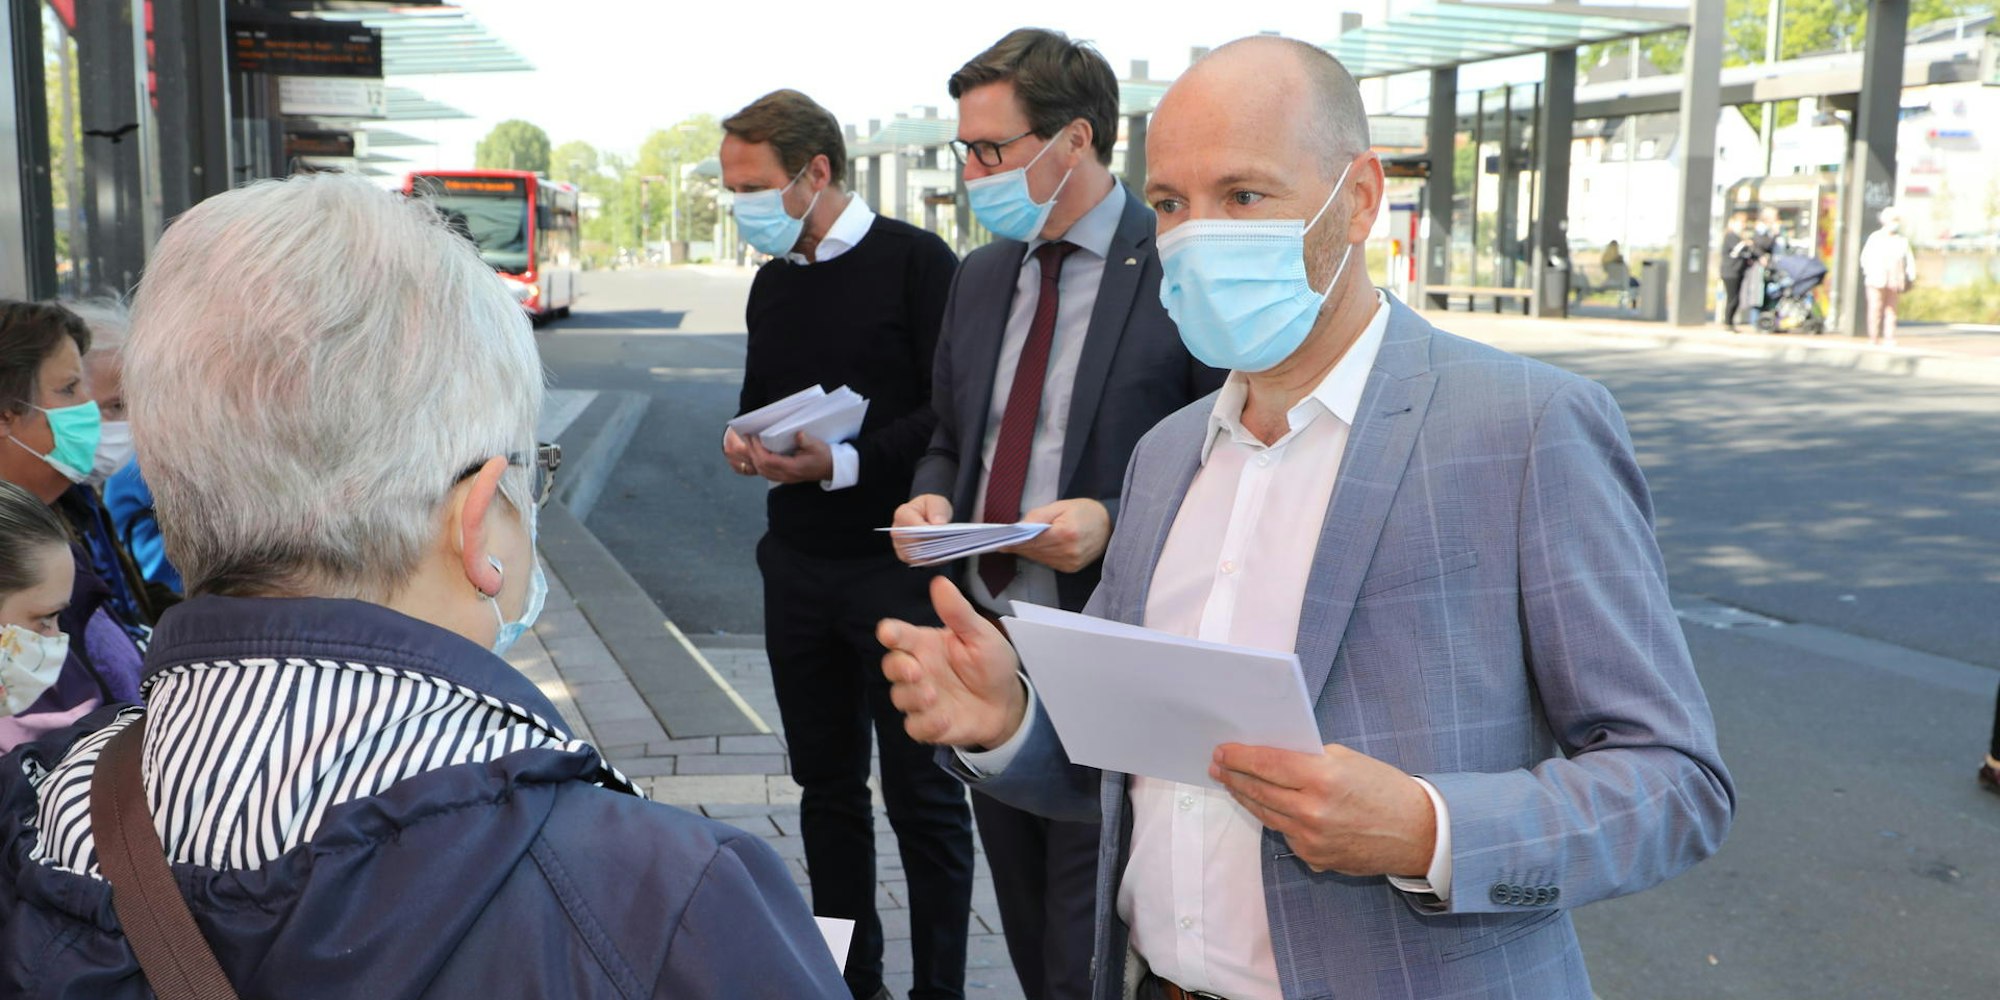 Für die Maskenpflicht in Bussen warben bereits im Mai 2020 (v.r.) Wupsi-Chef Marc Kretkowski, Landrat Stephan Santelmann und Leverkusens OB Uwe Richrath gemeinsam.